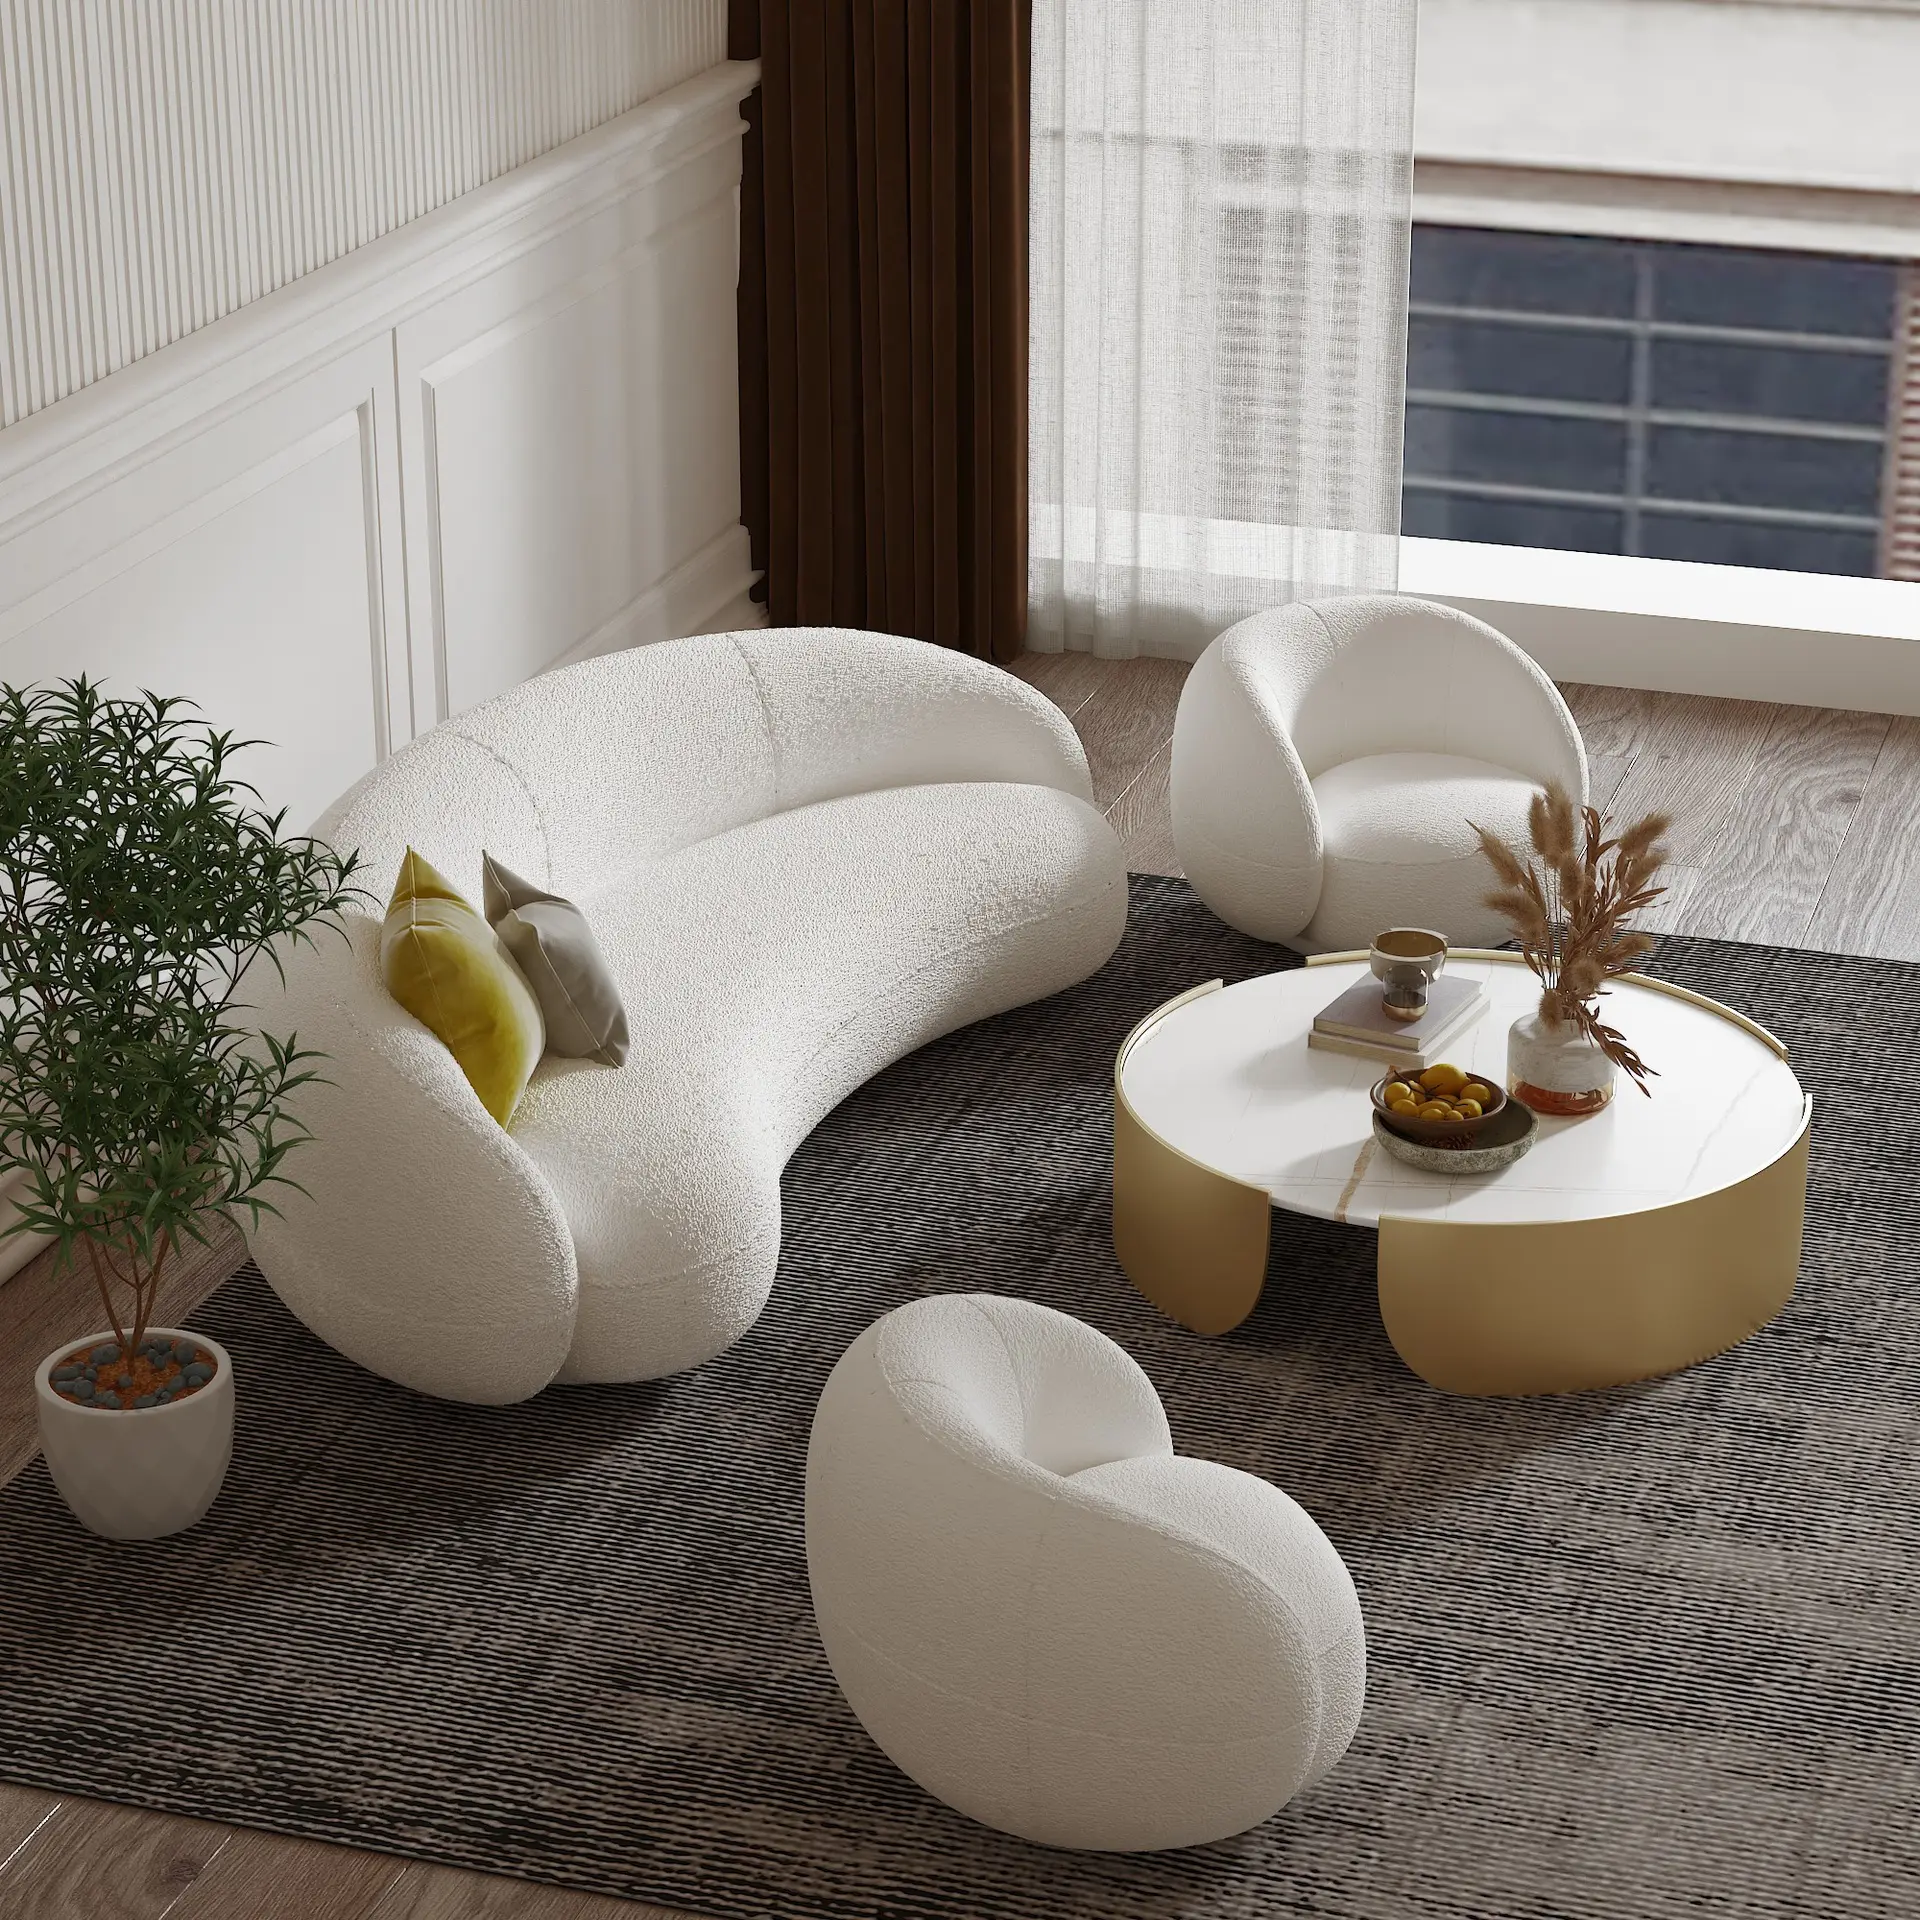 أريكة مستديرة, أريكة مقوسة ، تصميم دائري ، أريكة ، أبيض ، أرائك عصرية